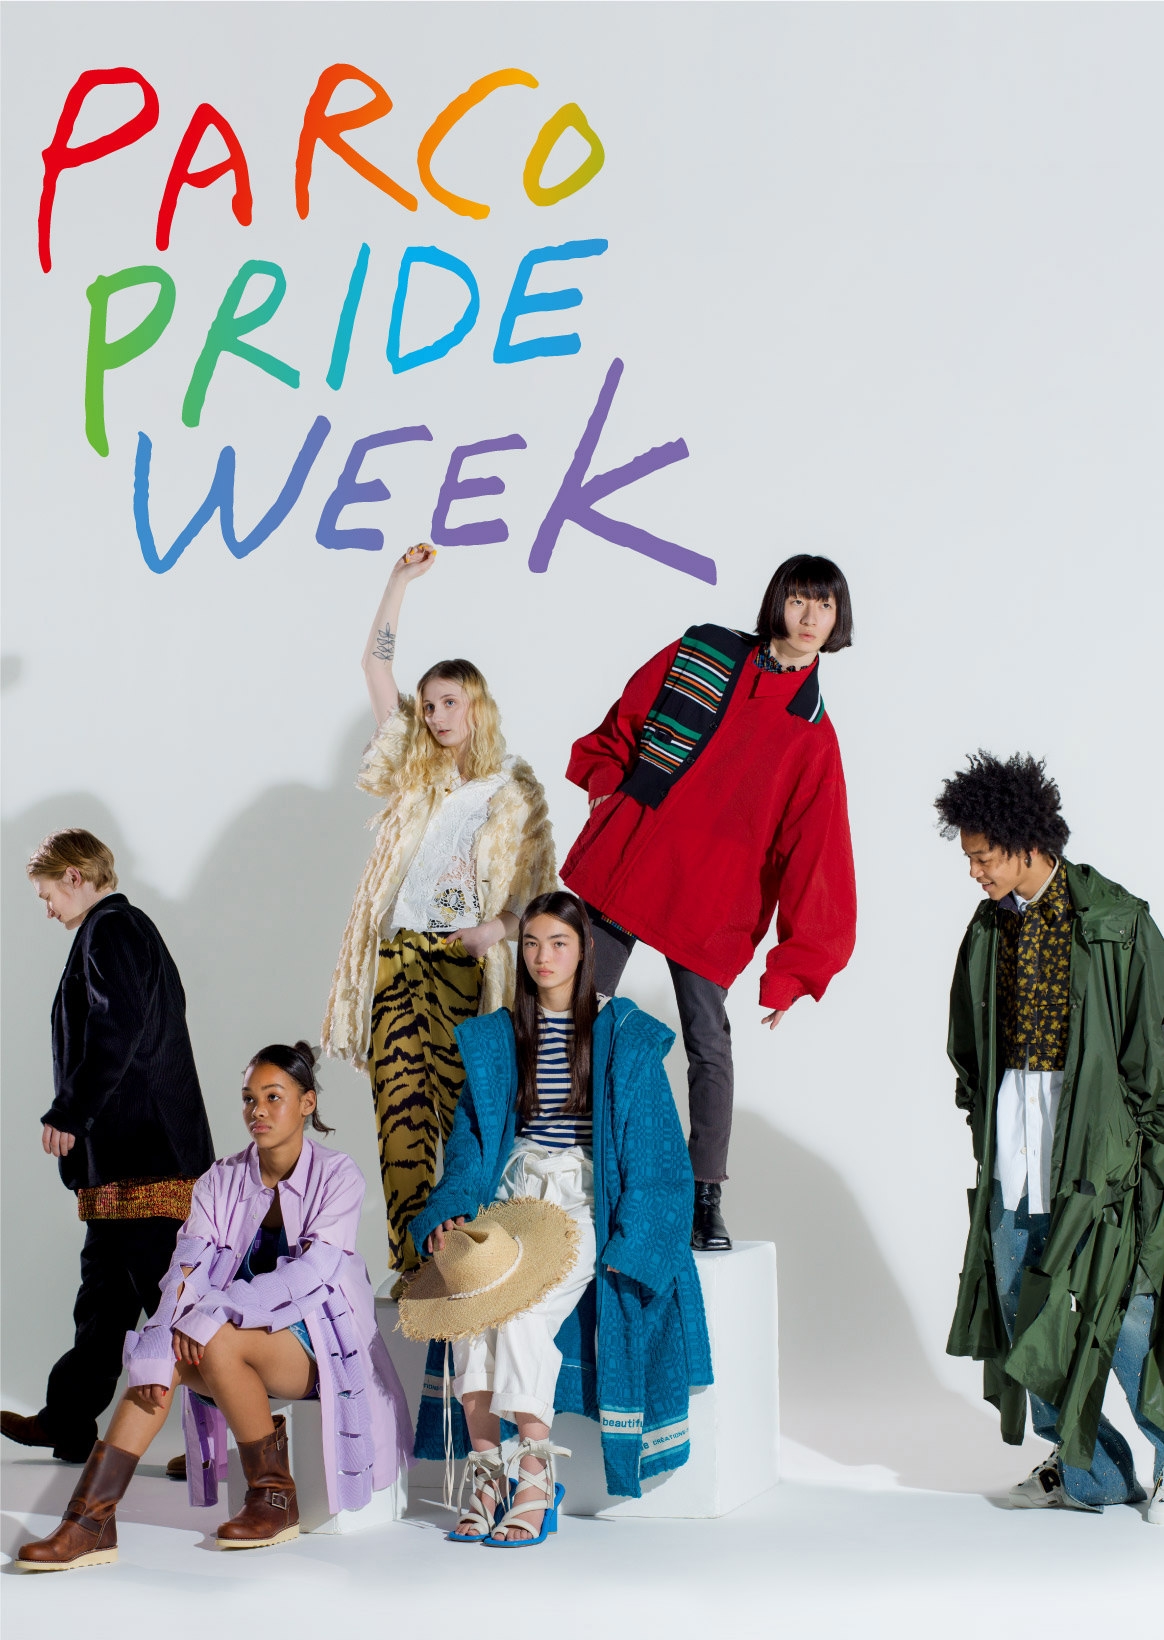 PARCO PRIDE WEEK|给在彩虹kolor上色的涩谷PARCO的节日。把潜水员城举起来，举行"PRIDE WEEK"